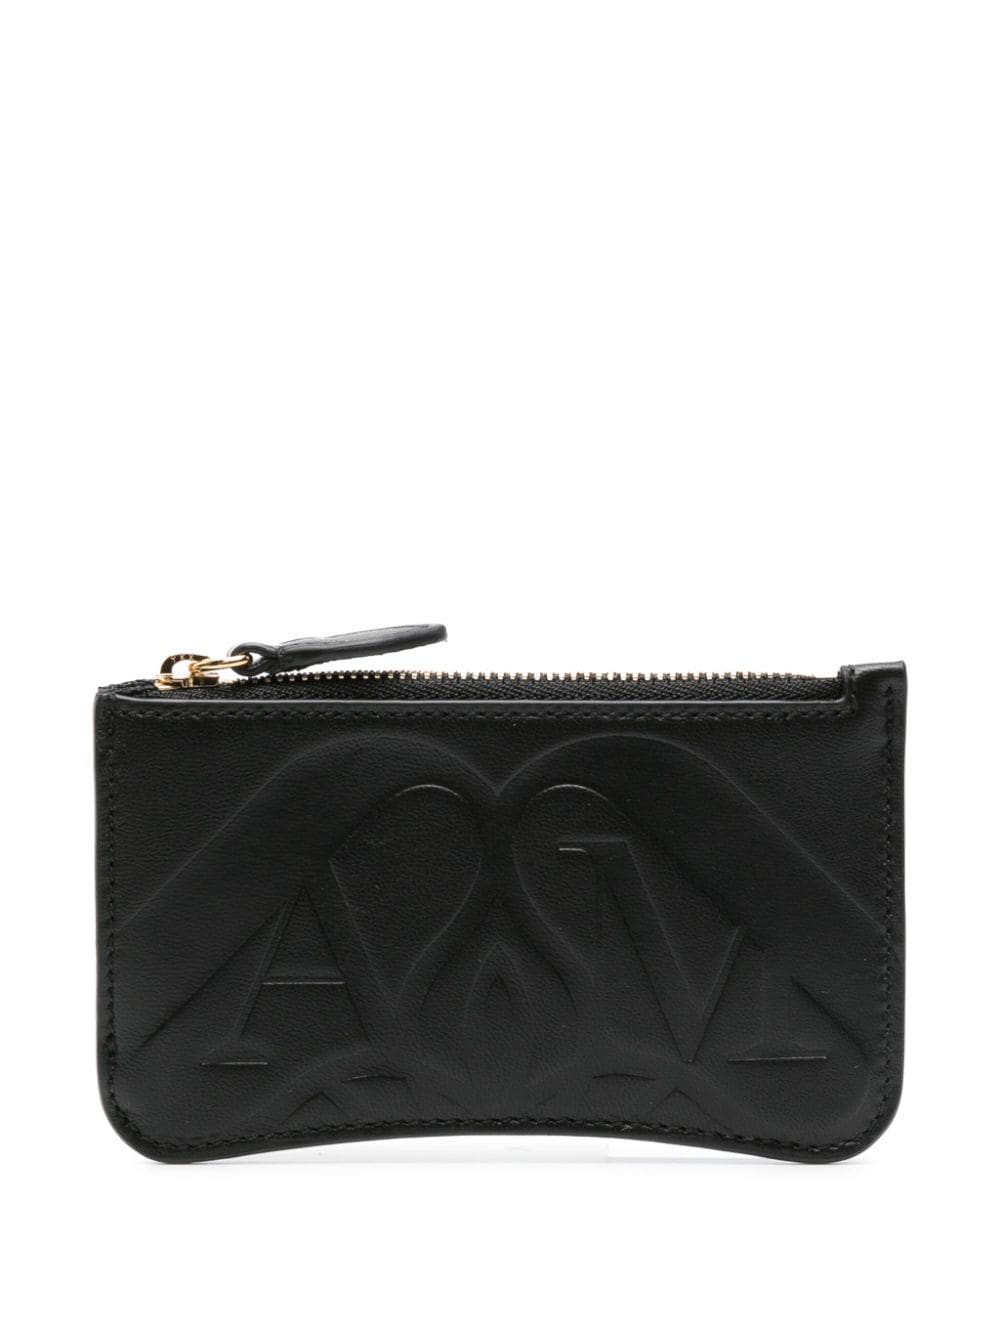 Logo-debossed leather wallet<BR/><BR/><BR/>